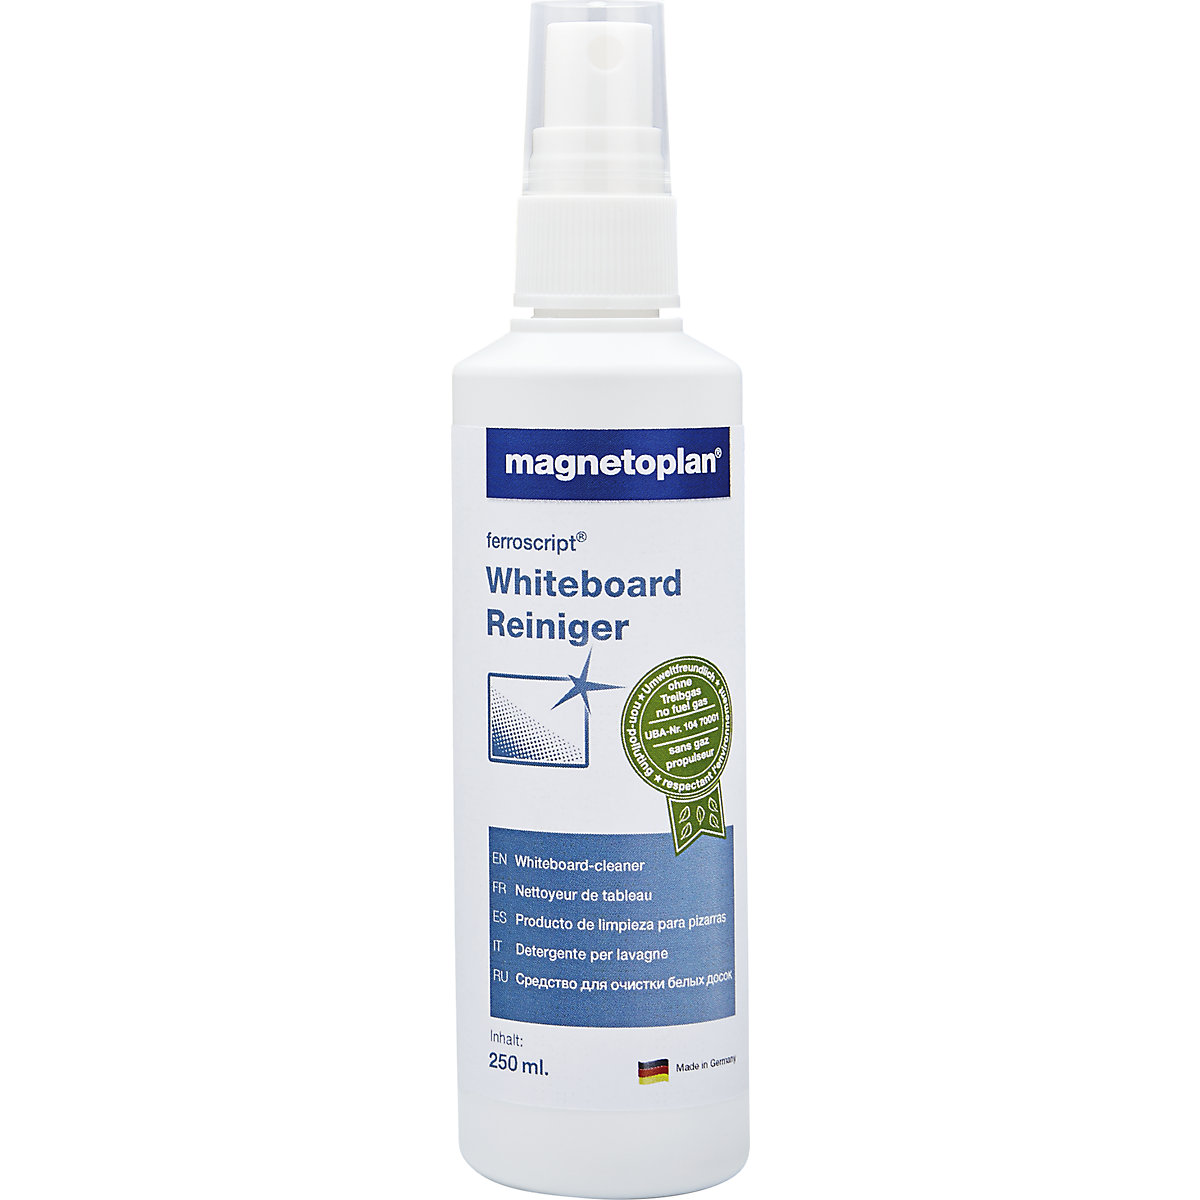 Detergent pentru panou whiteboard ferroscript® – magnetoplan